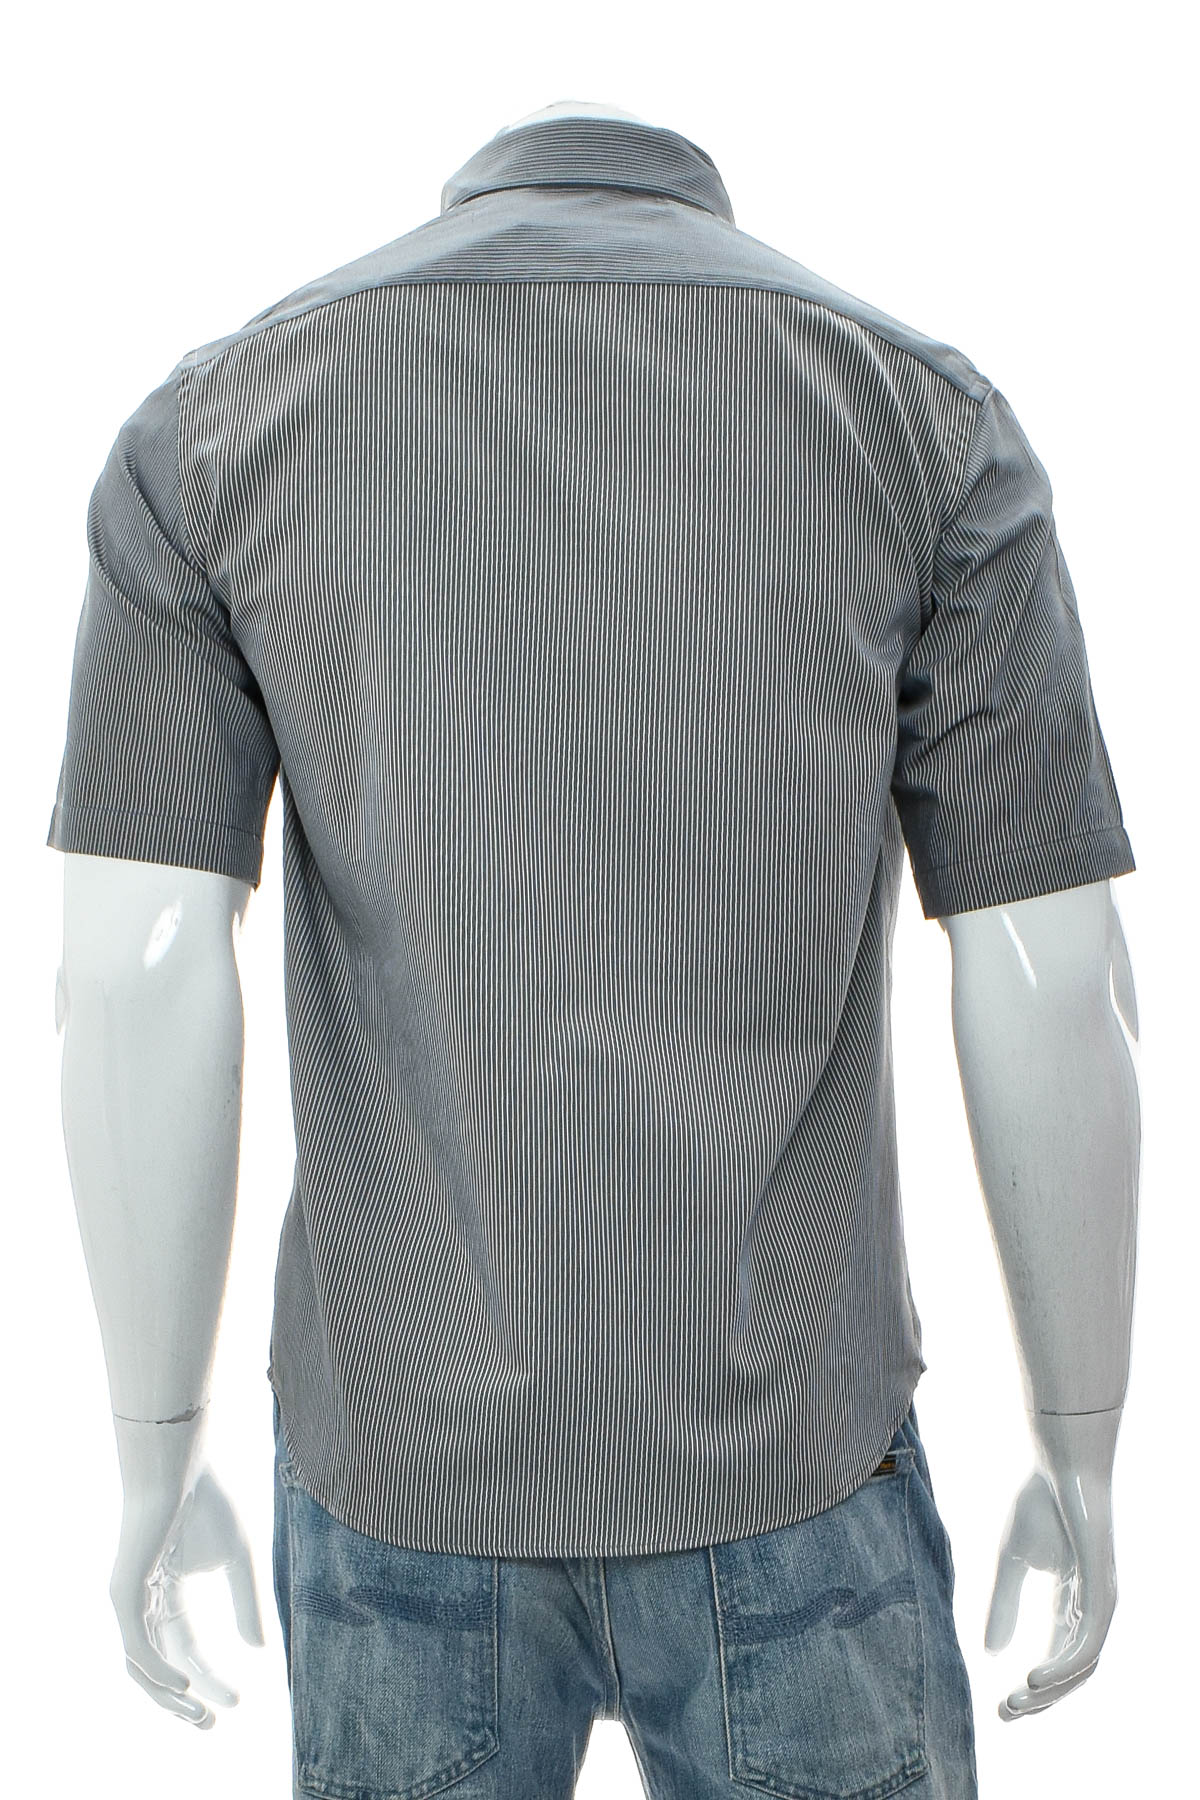 Ανδρικό πουκάμισο - JOHN KEVIN - 1